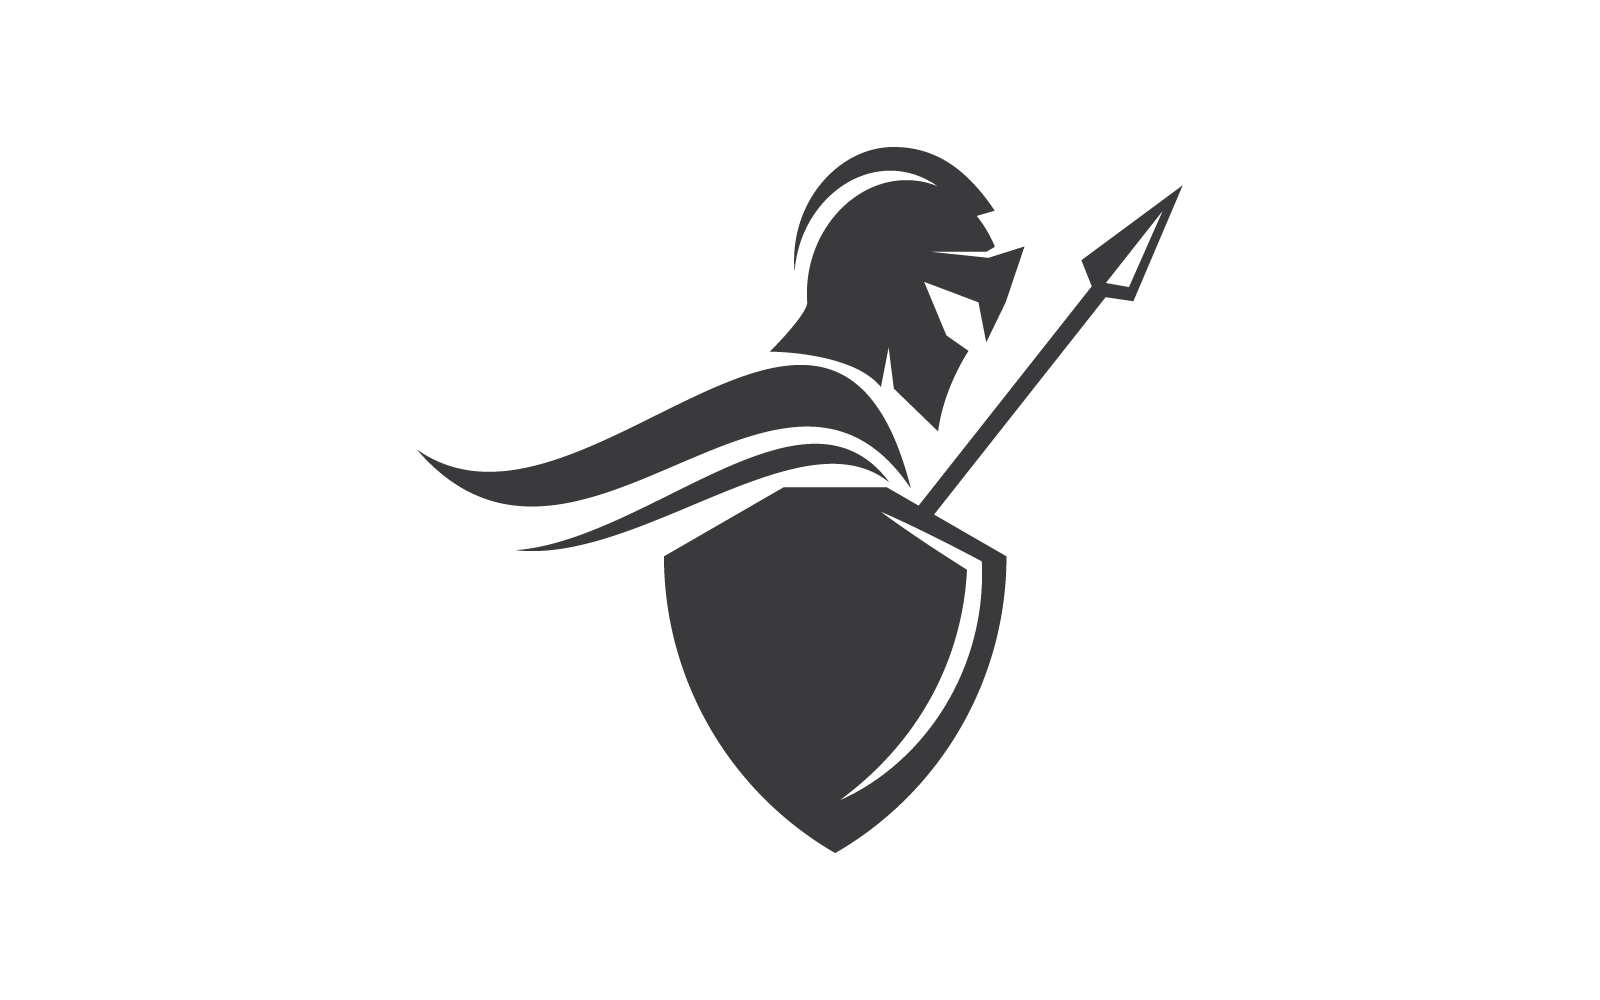 Spartan gladiator illustration logo vector design